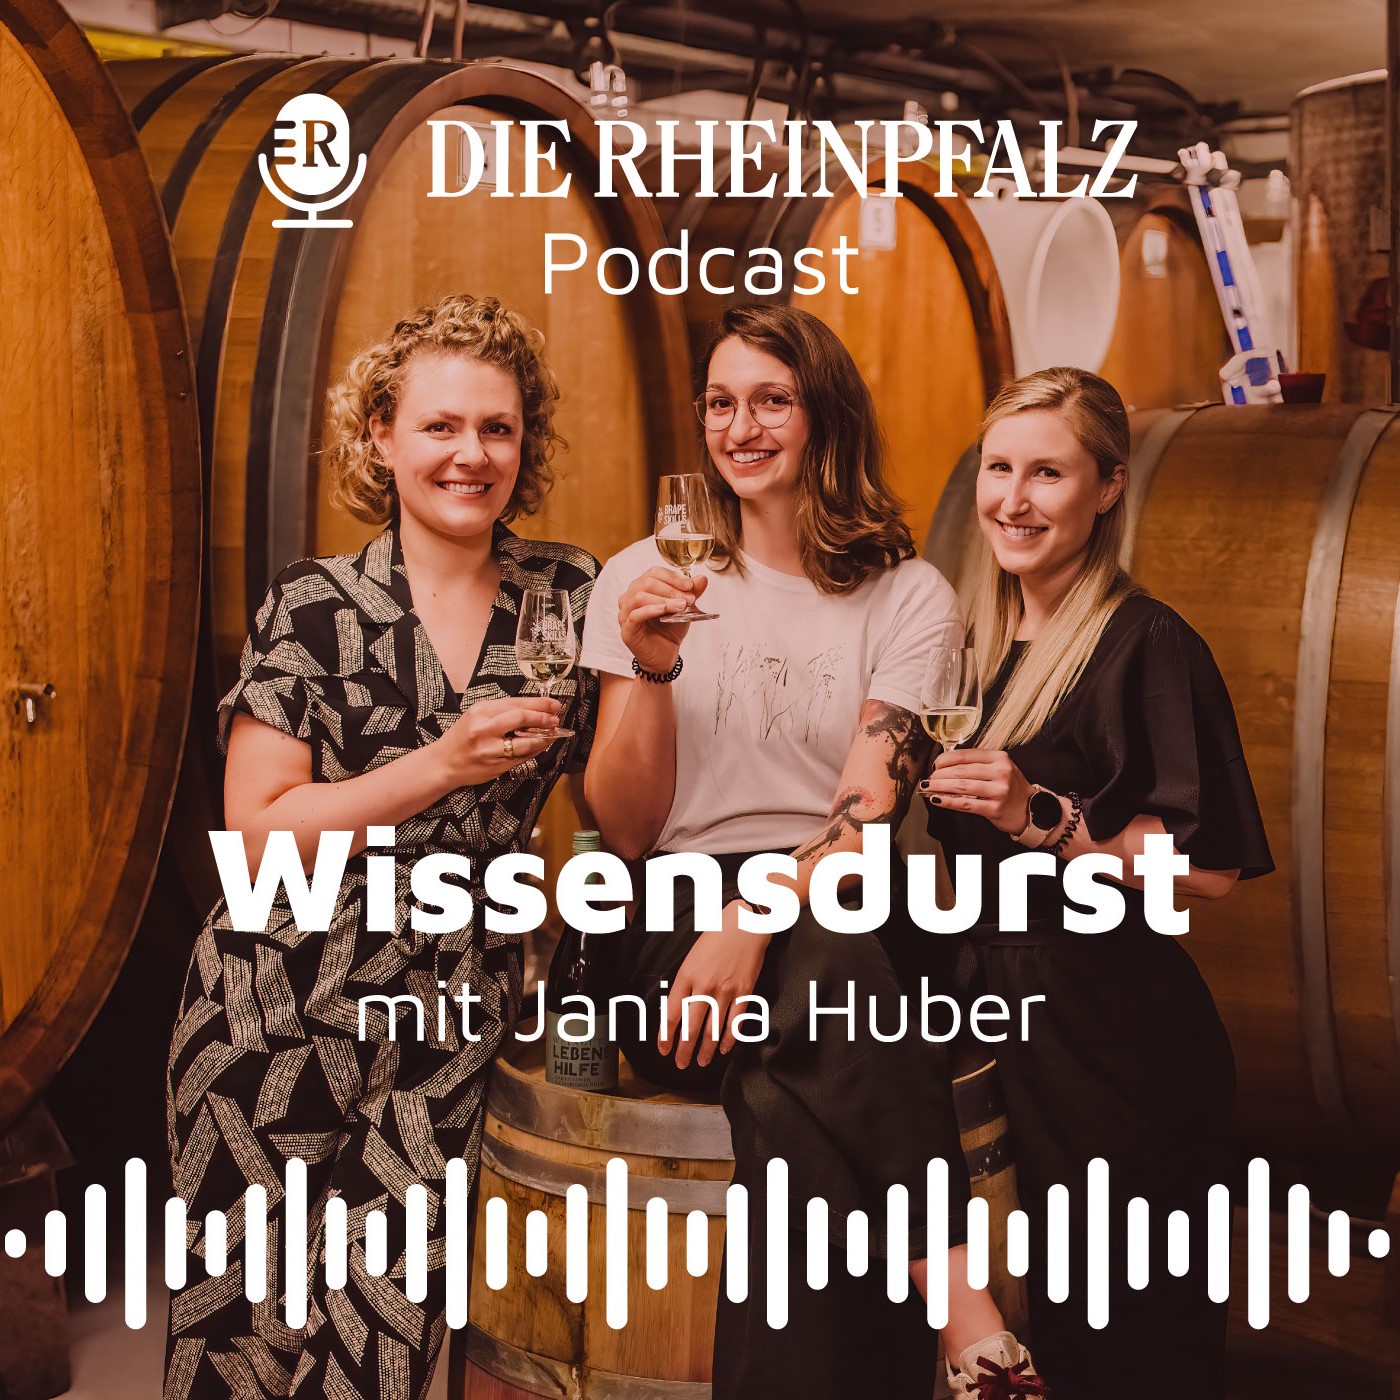 Wissensdurst - Der Weinpodcast der RHEINPFALZ